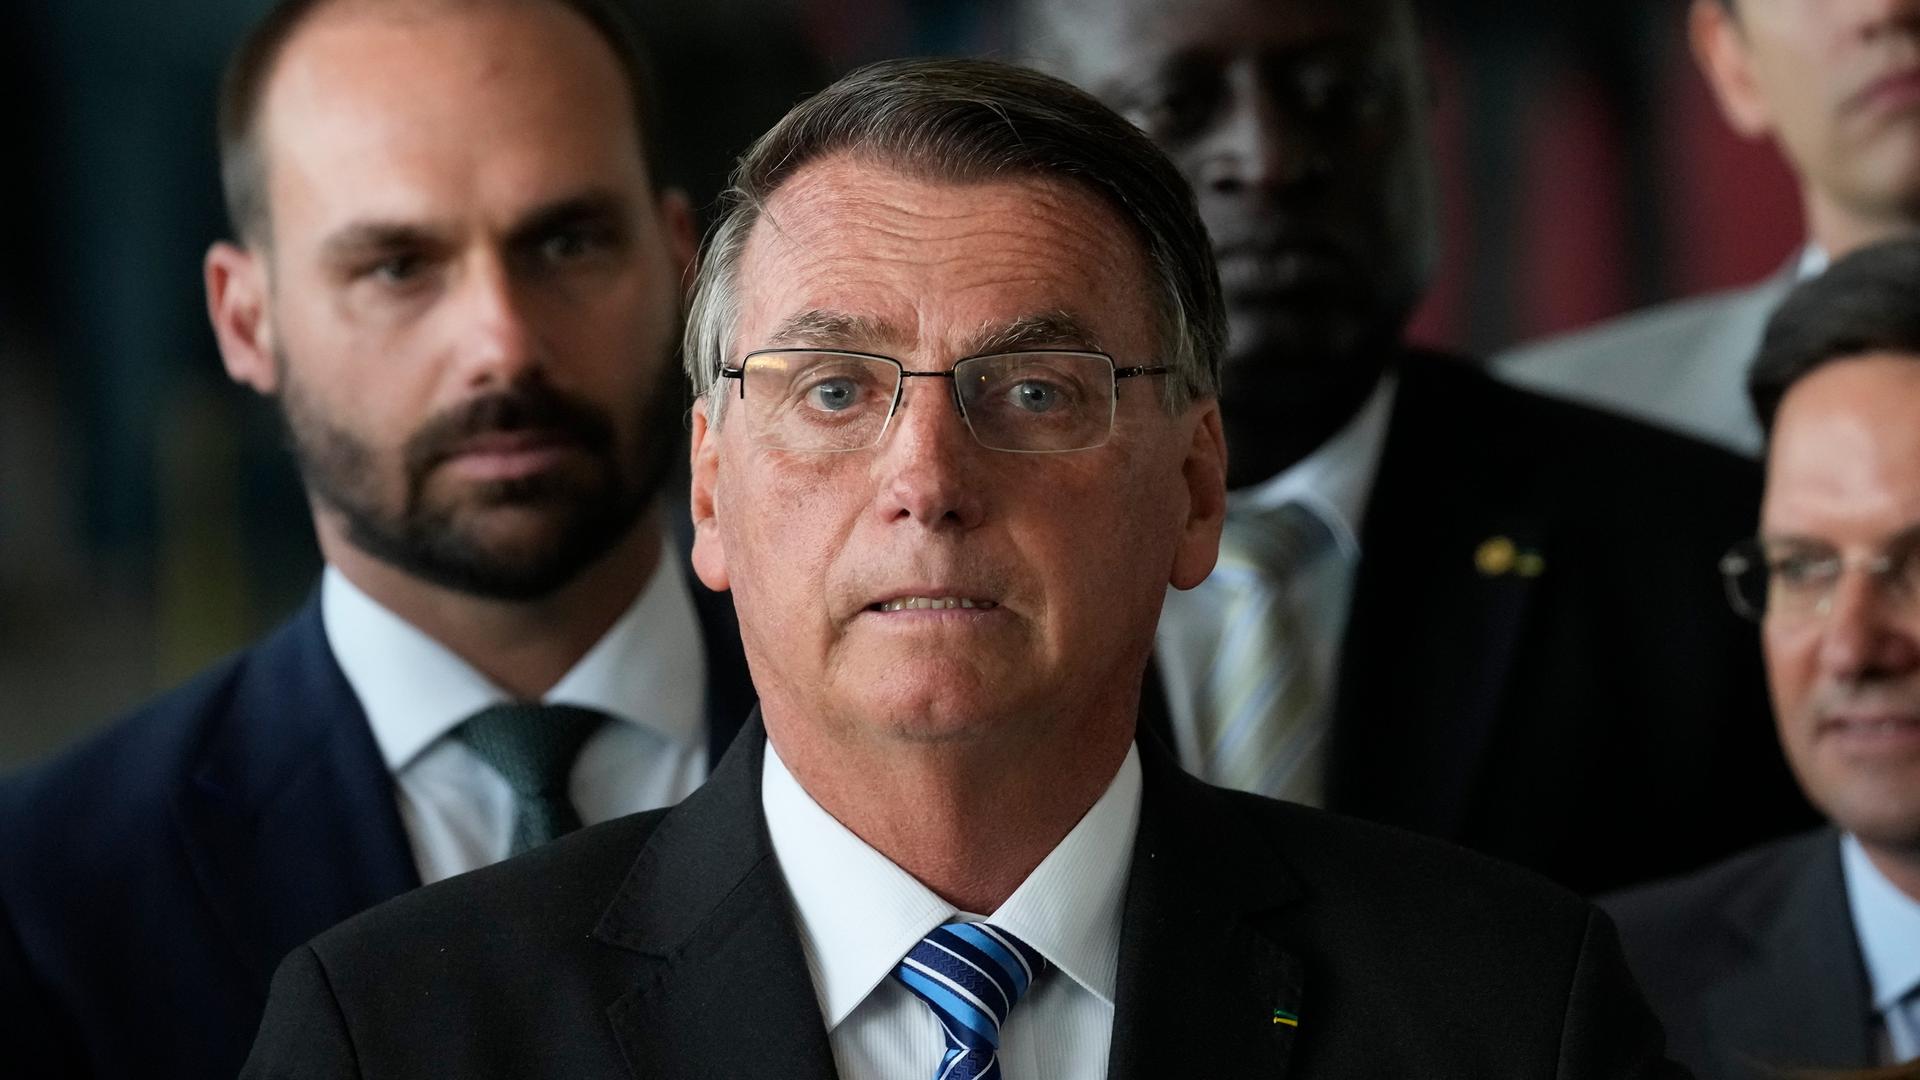 Großaufnahme von Jair Bolsonaro, der betreten mit halb geöffnetem Mund in die Kamera schaut. Im Hintergrund sind Mitglieder seiner Regierung zu sehen.